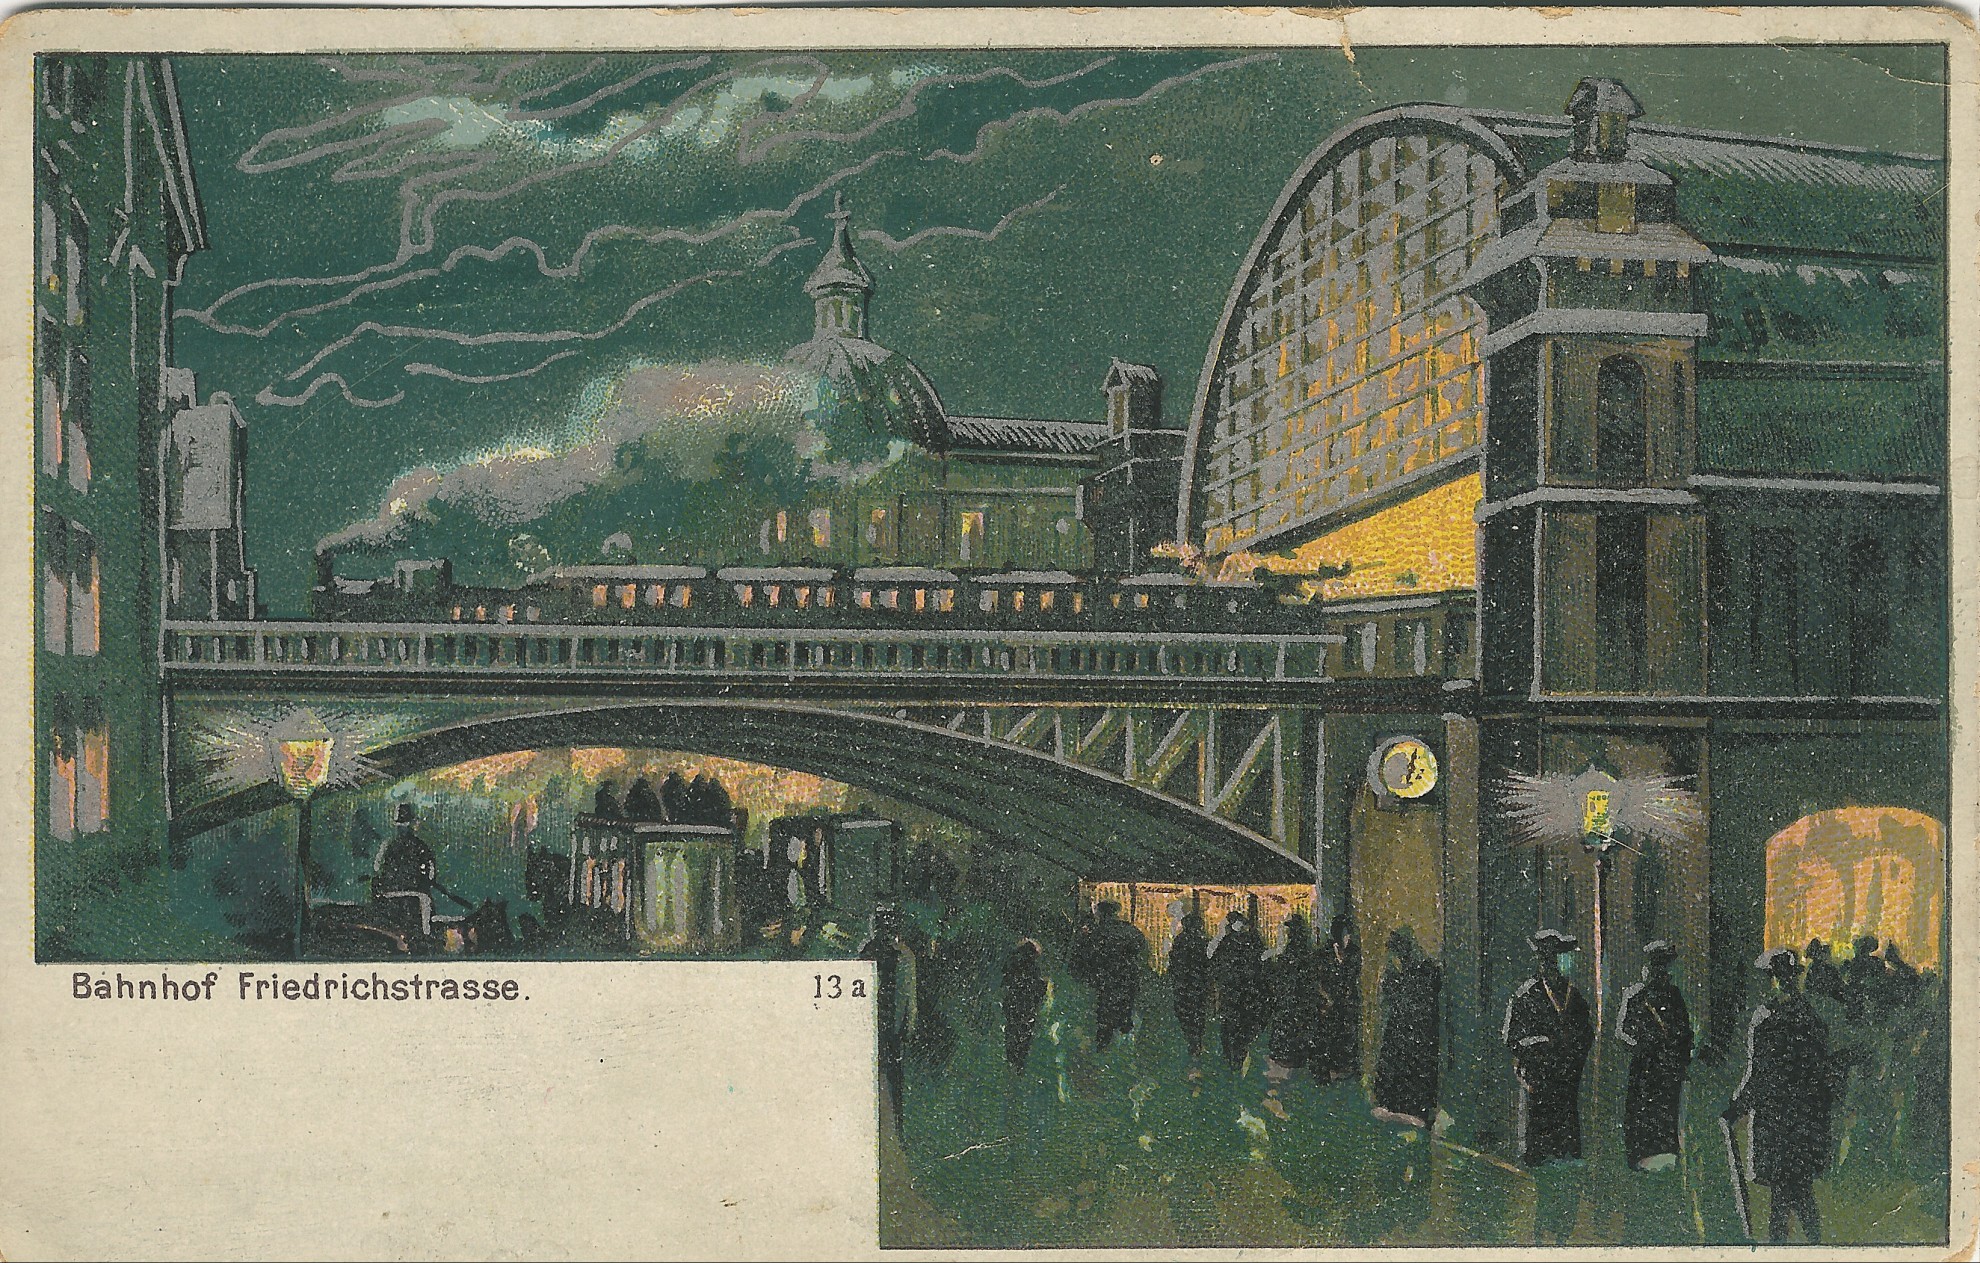 Right through the city – Friedrichstrasse around 1900 